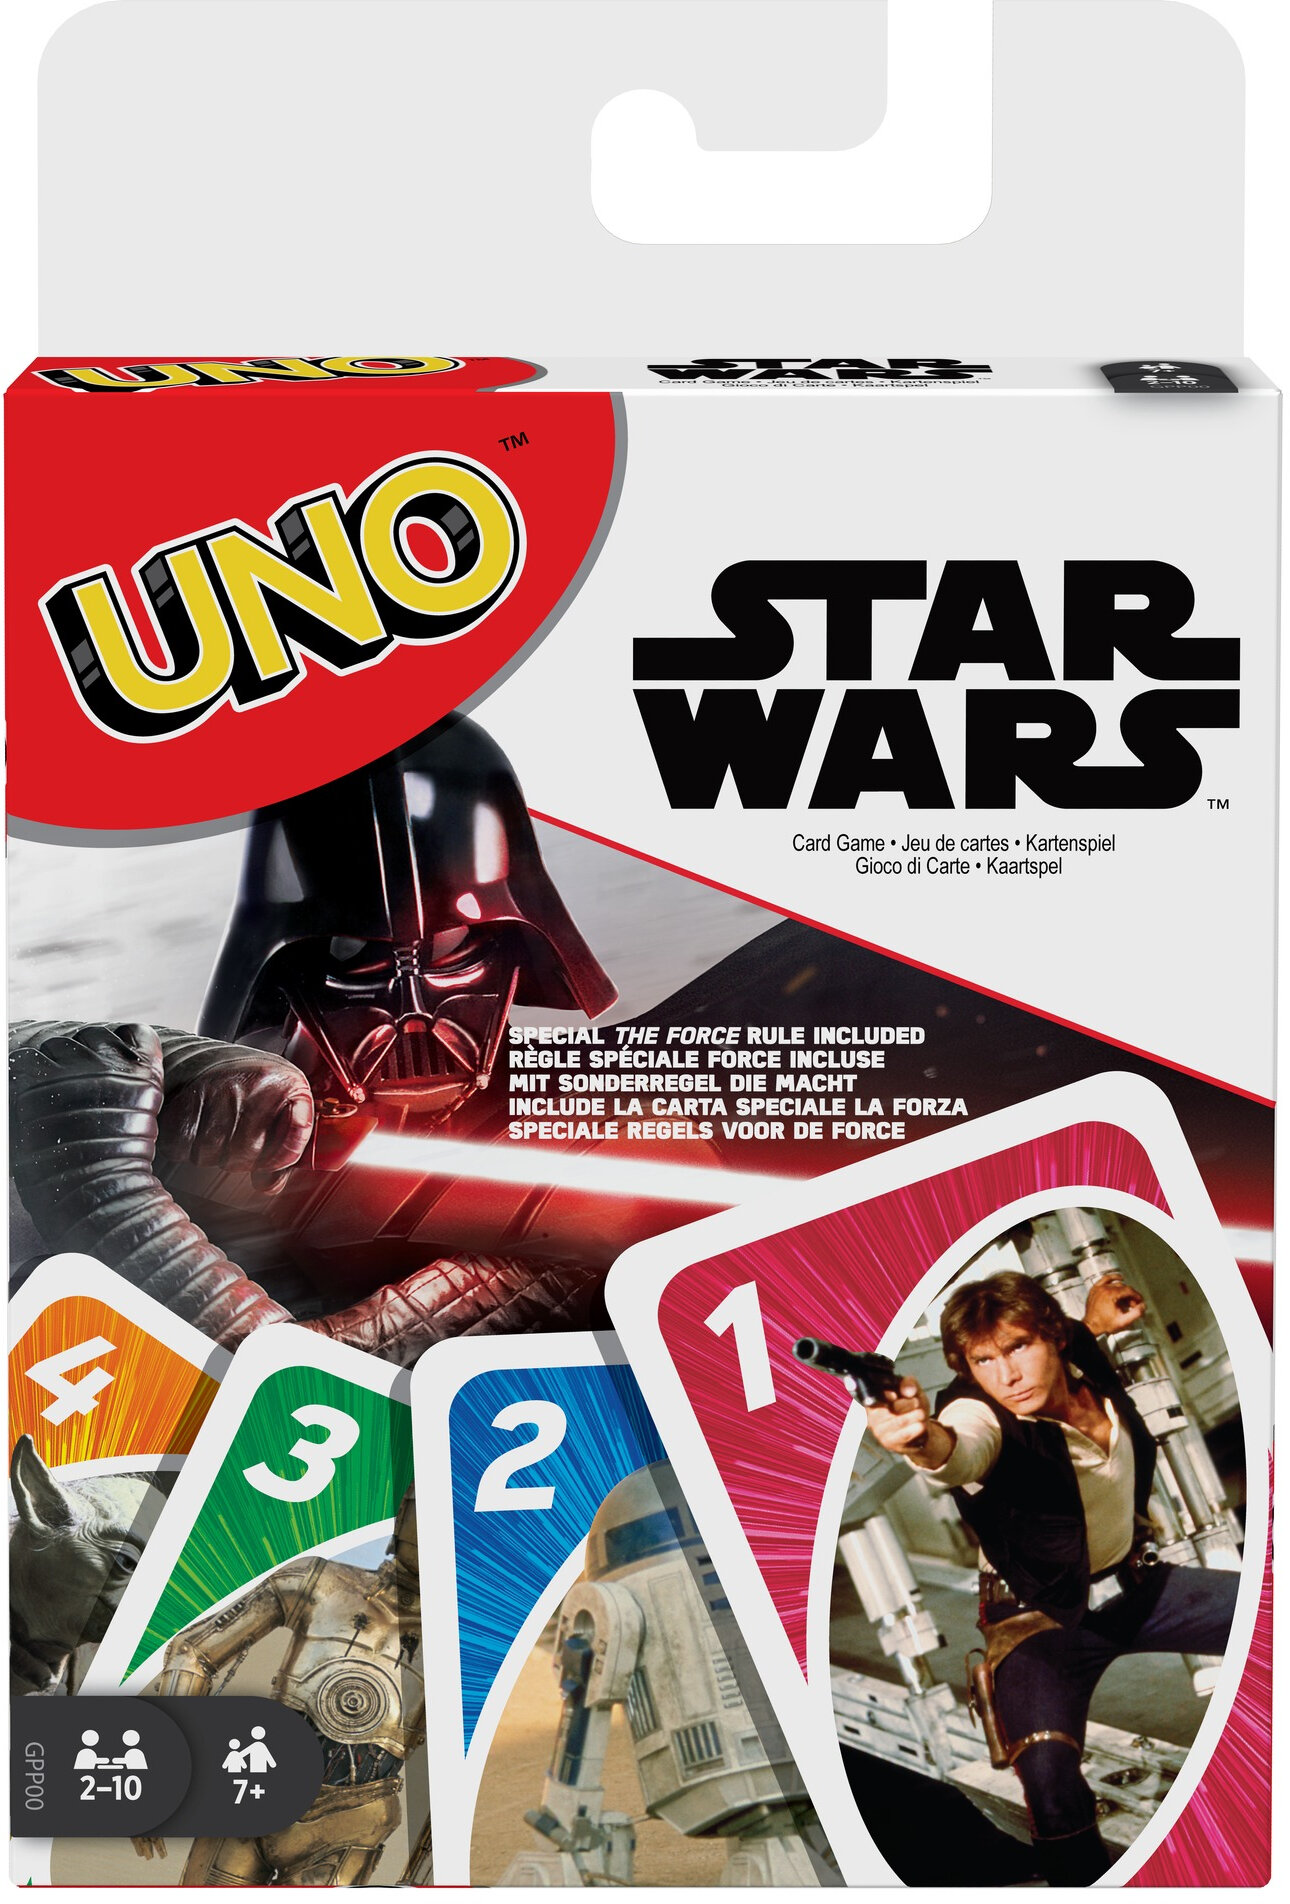 Star Wars: Uno – Shop Retro Active and Retro Active Part